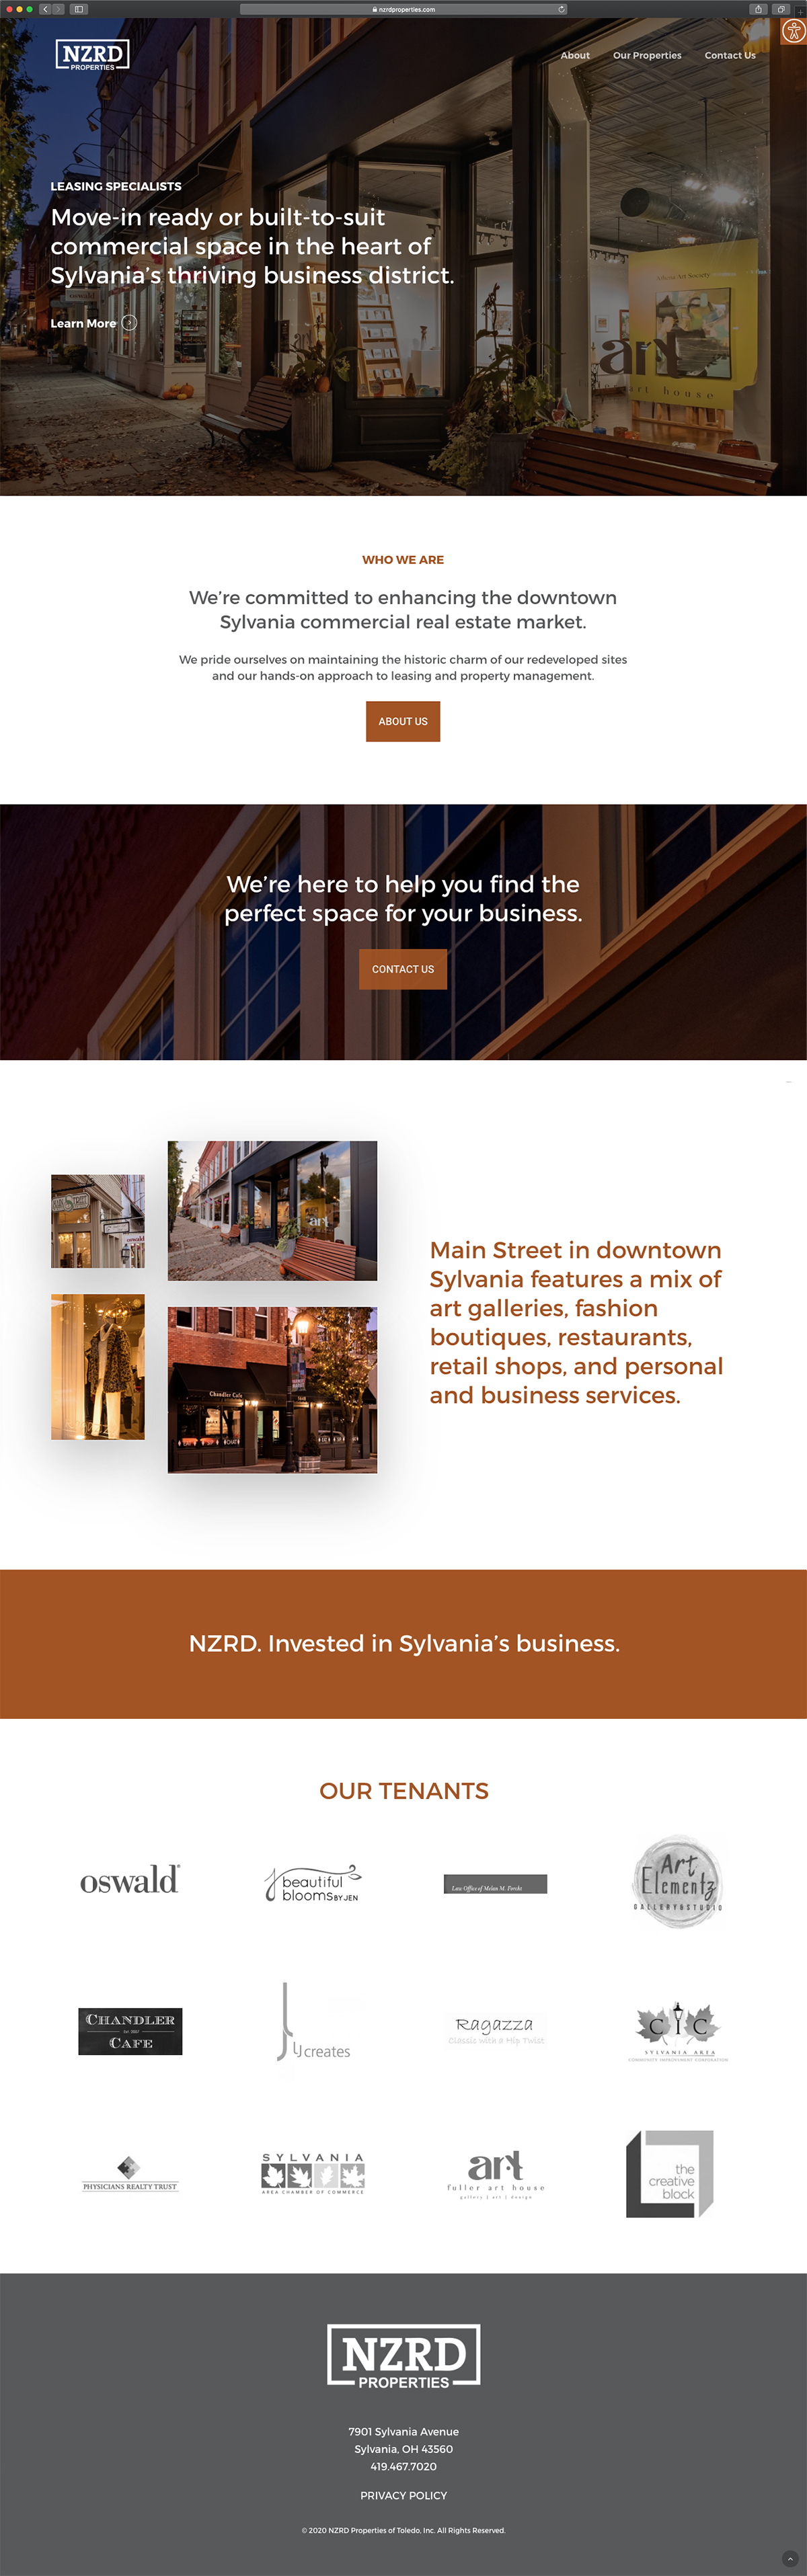 NZRD Properties - Homepage